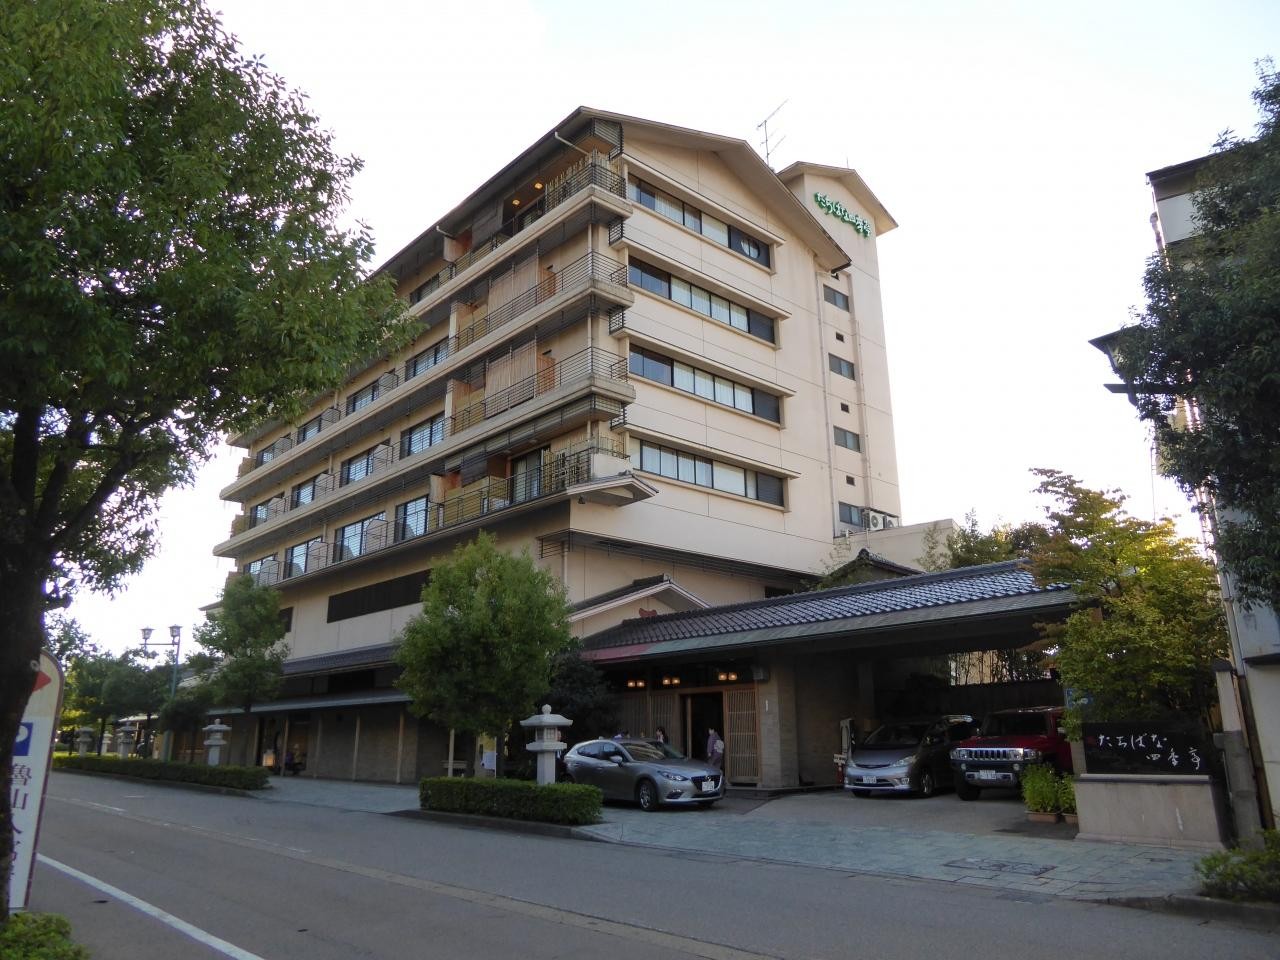 石川県・加賀市にある歴史ある温泉旅館！たちばな四季亭 